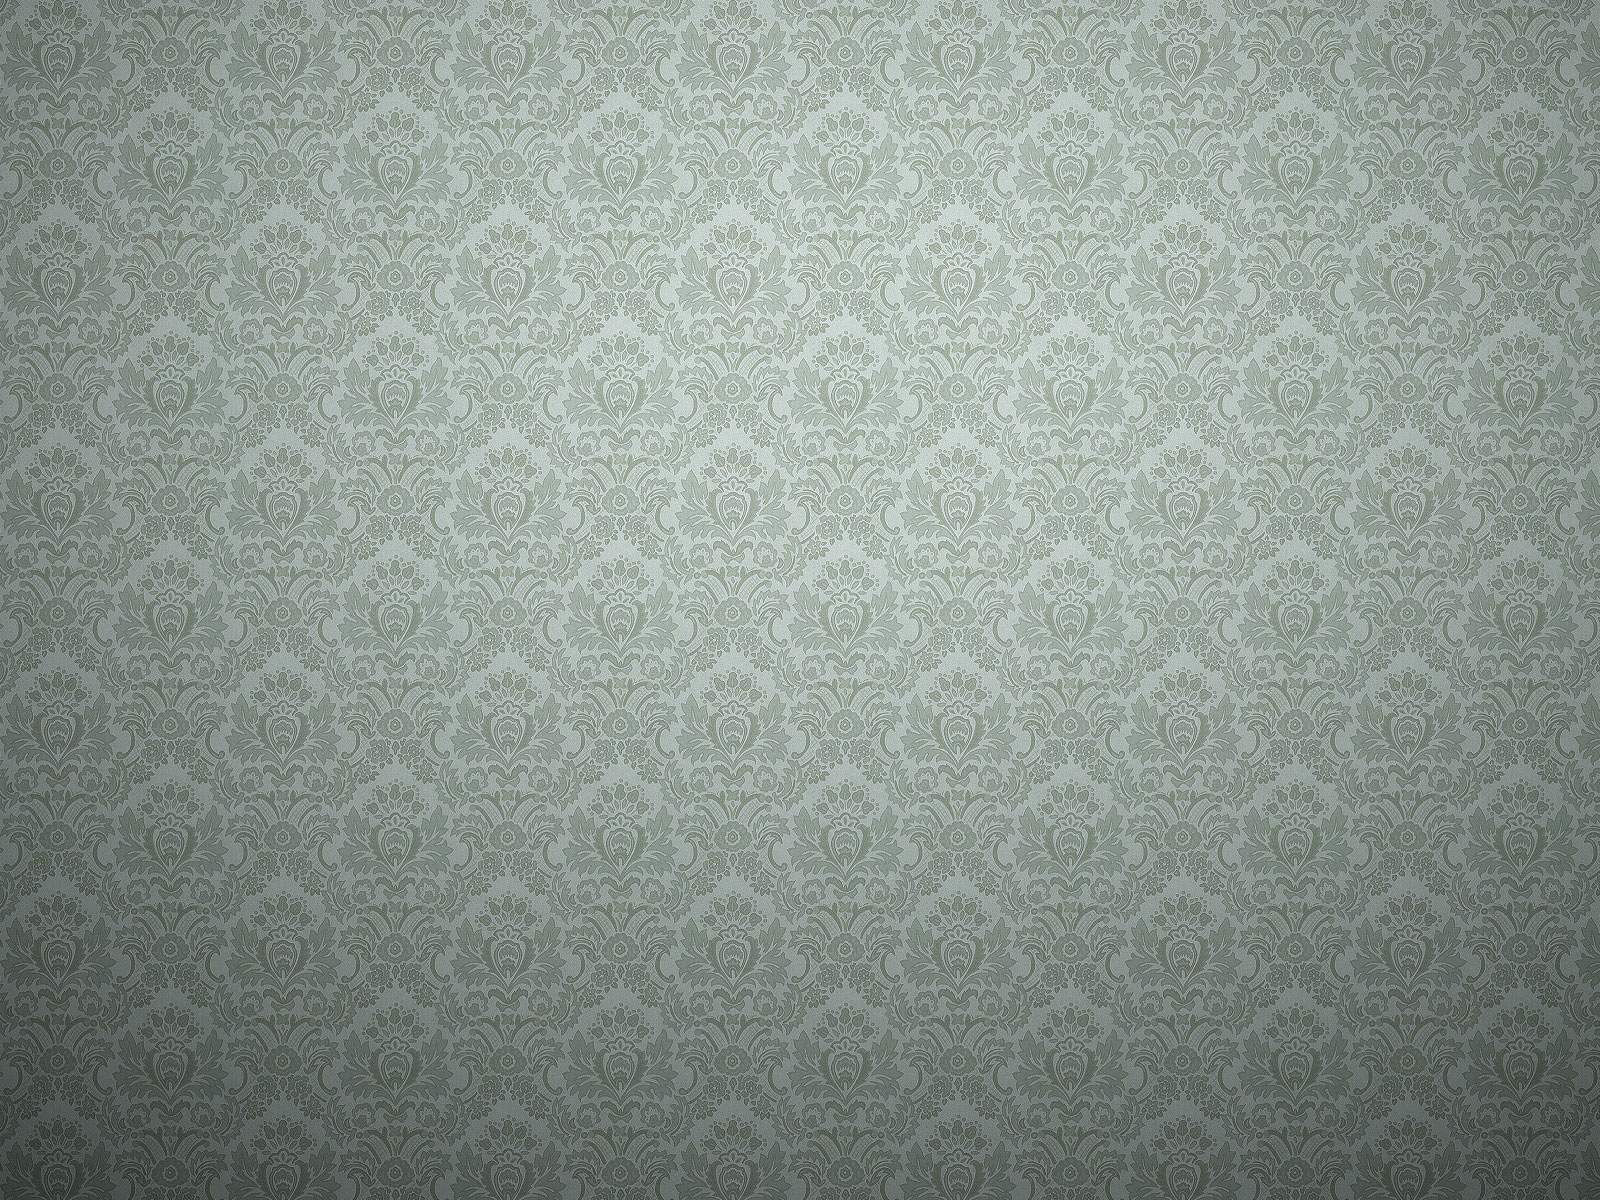 Vibrant high-resolution desktop wallpaper.